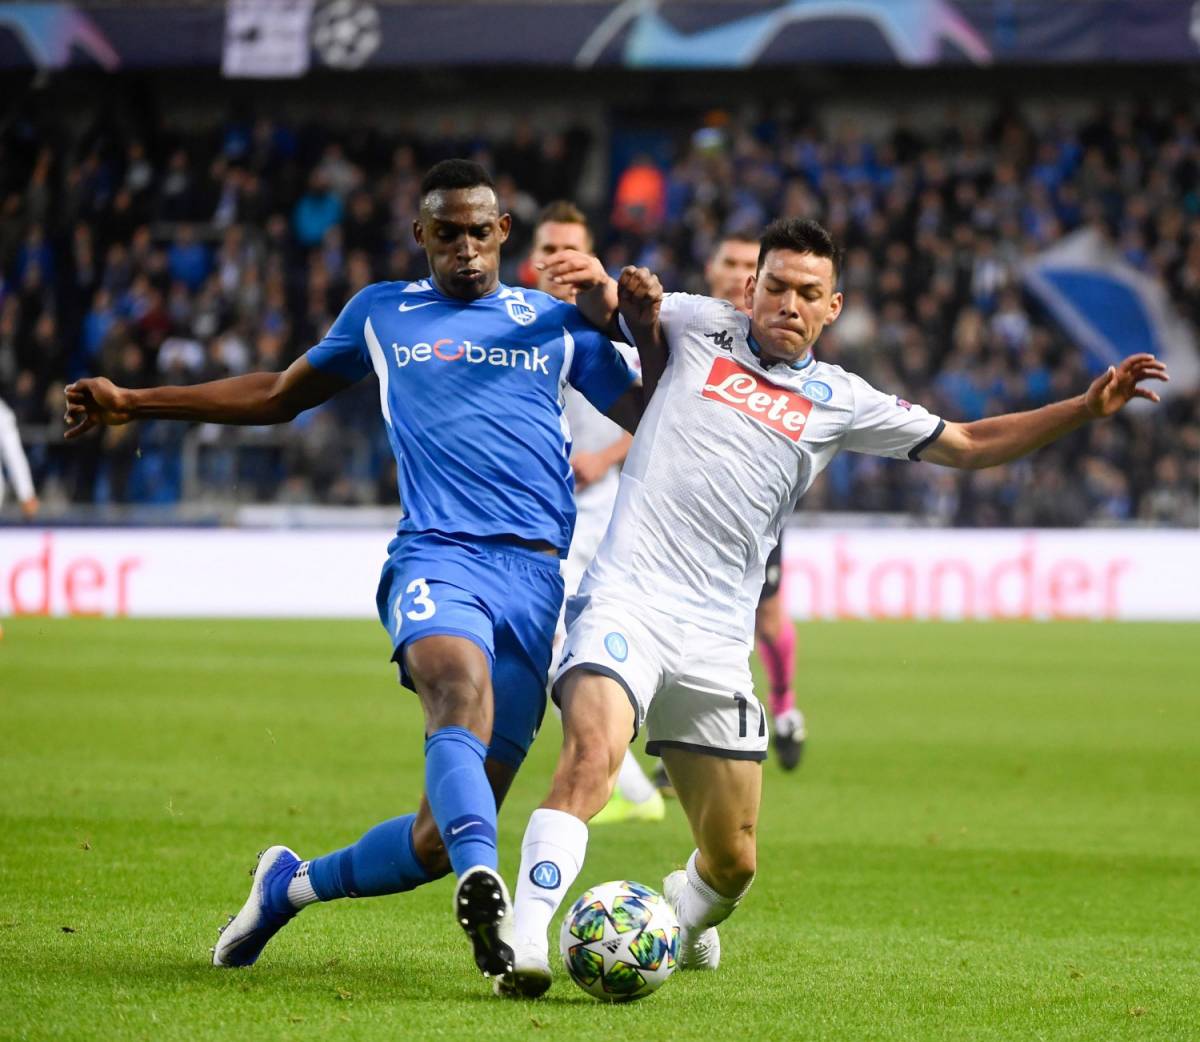 Il Napoli non sfonda in Belgio: finisce 0-0 contro il Genk